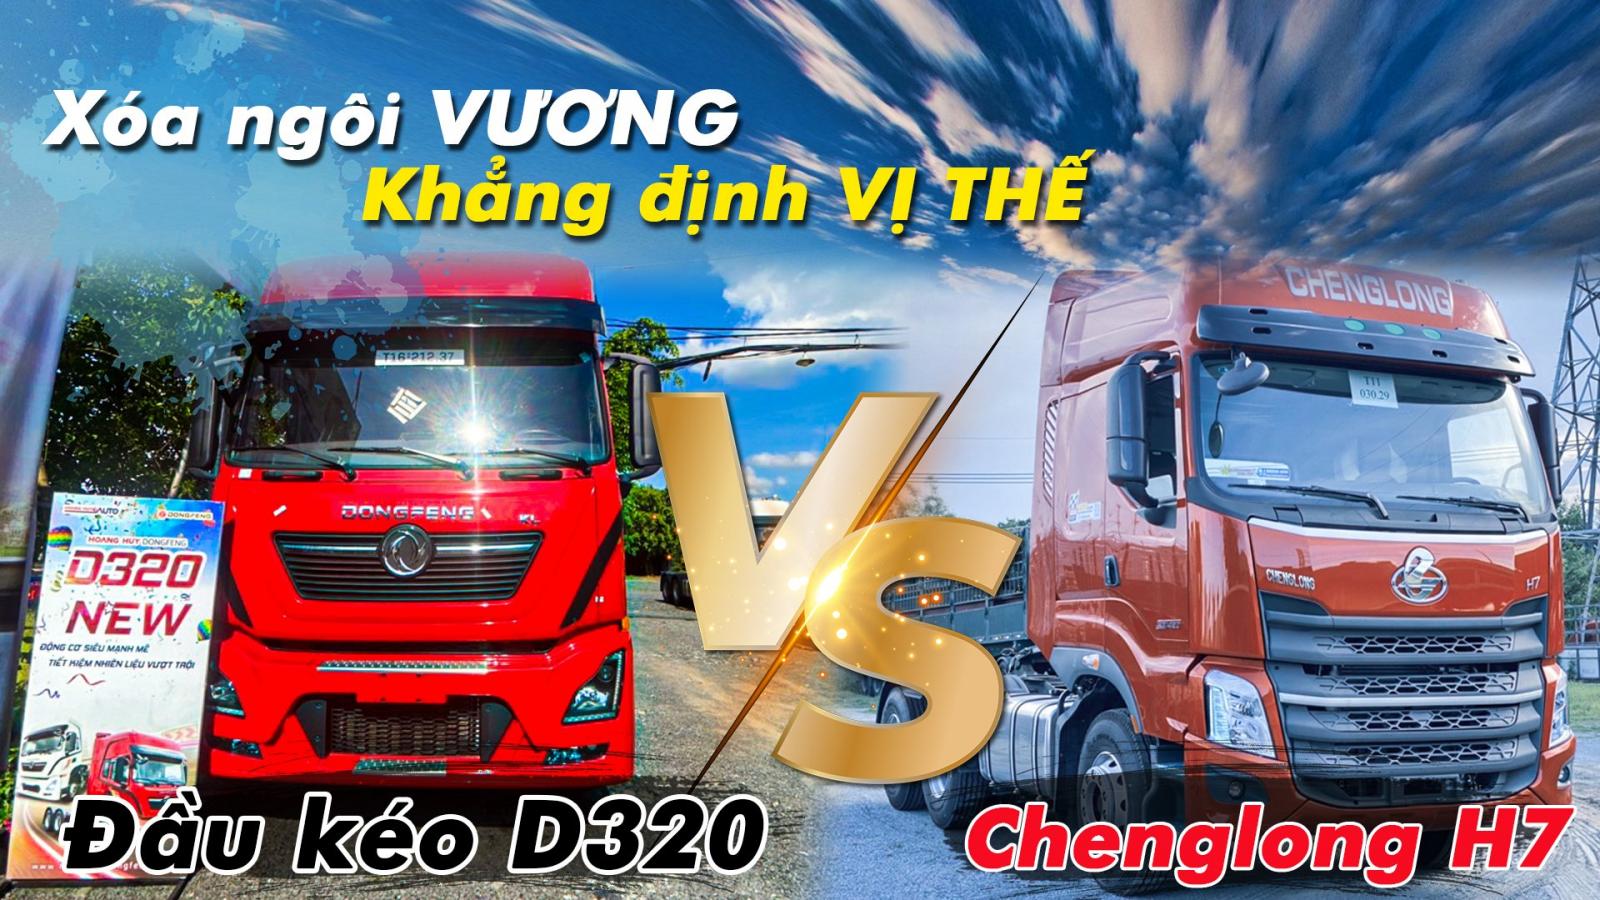 Giá đầu kéo dongfeng D320 máy 420 cầu nhanh siêu lợi dầu